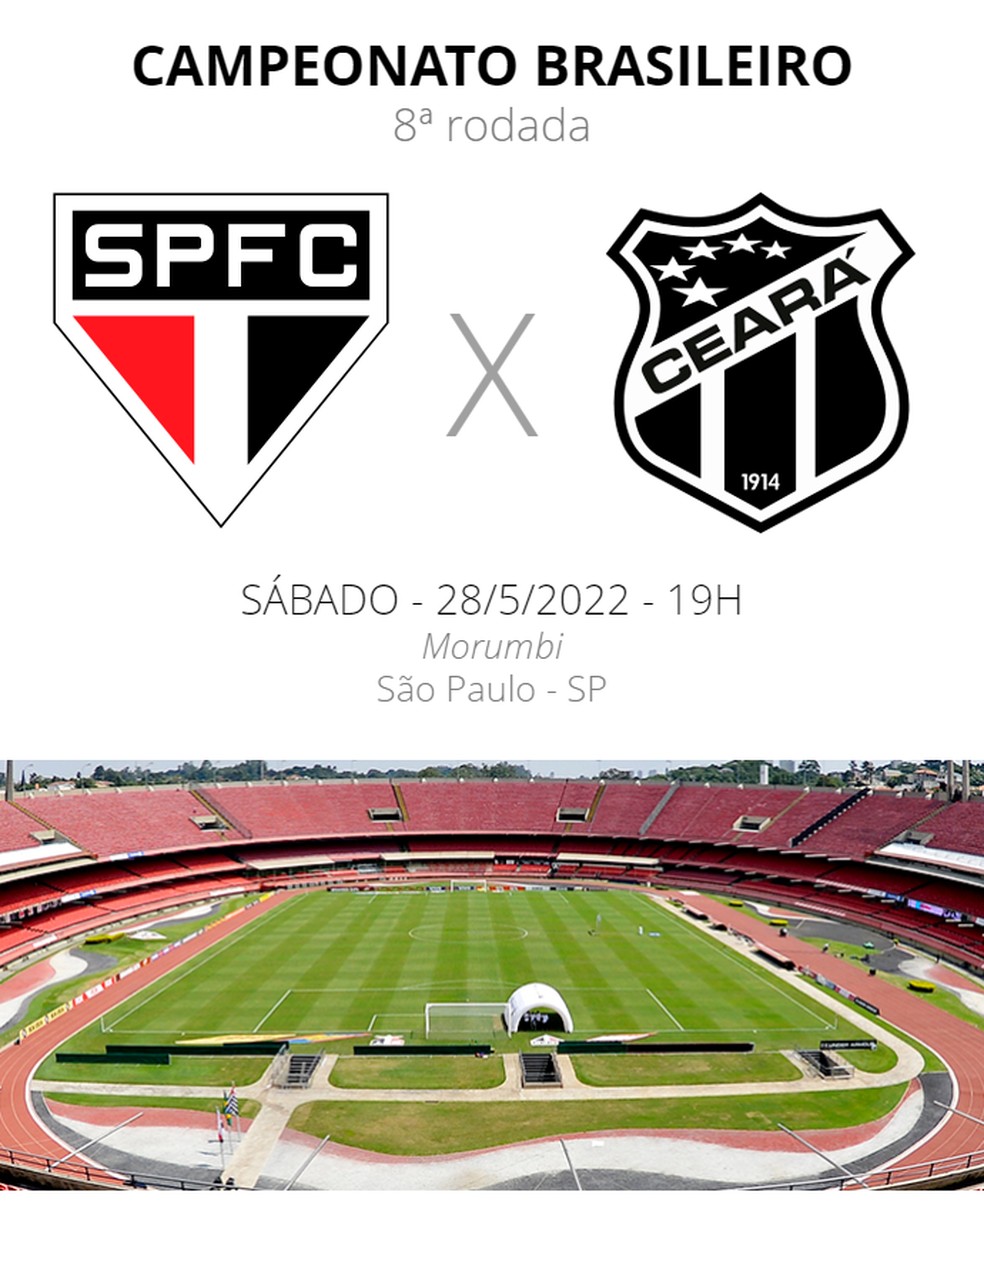 Onde assistir o jogo do São Paulo e Ceará?